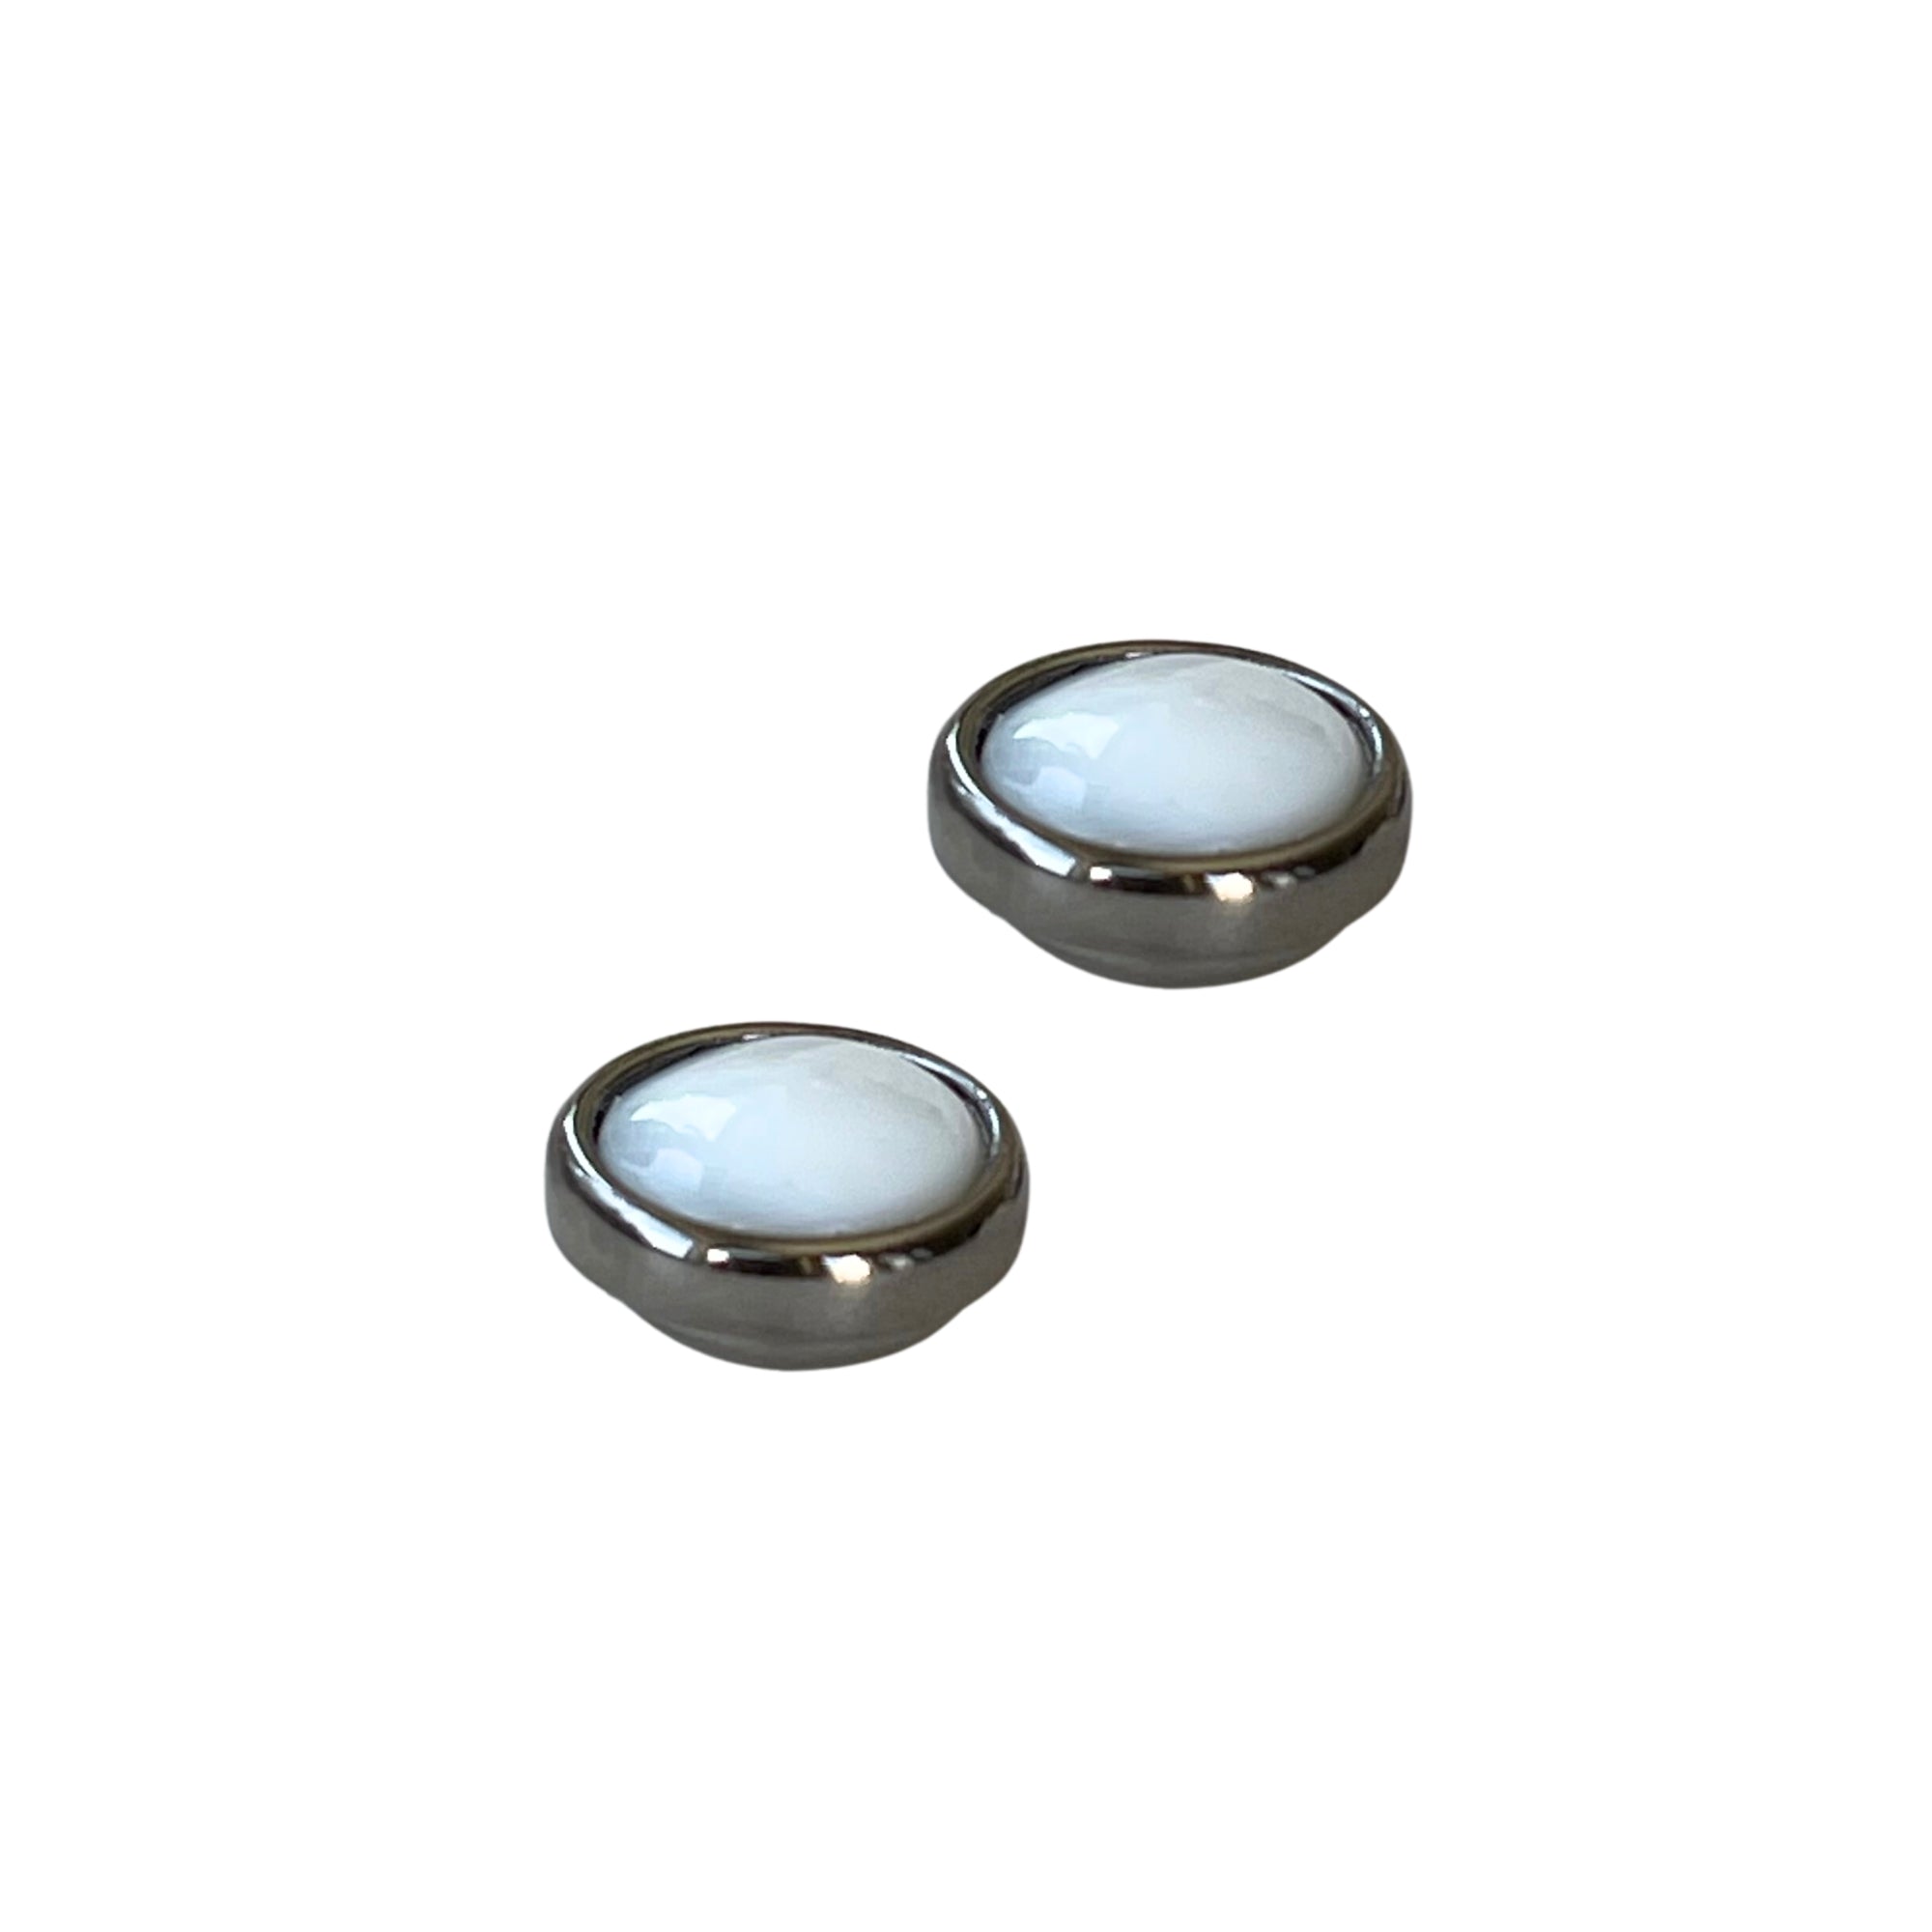 Ohrring mit Magnetverschluss aus Perlmutt - Durchmesser: 1,2 cm - Der Magnetverschluss erleichtert das Anlegen und sorgt dafür, dass der Ohrring fest im Ohr sitzt. 